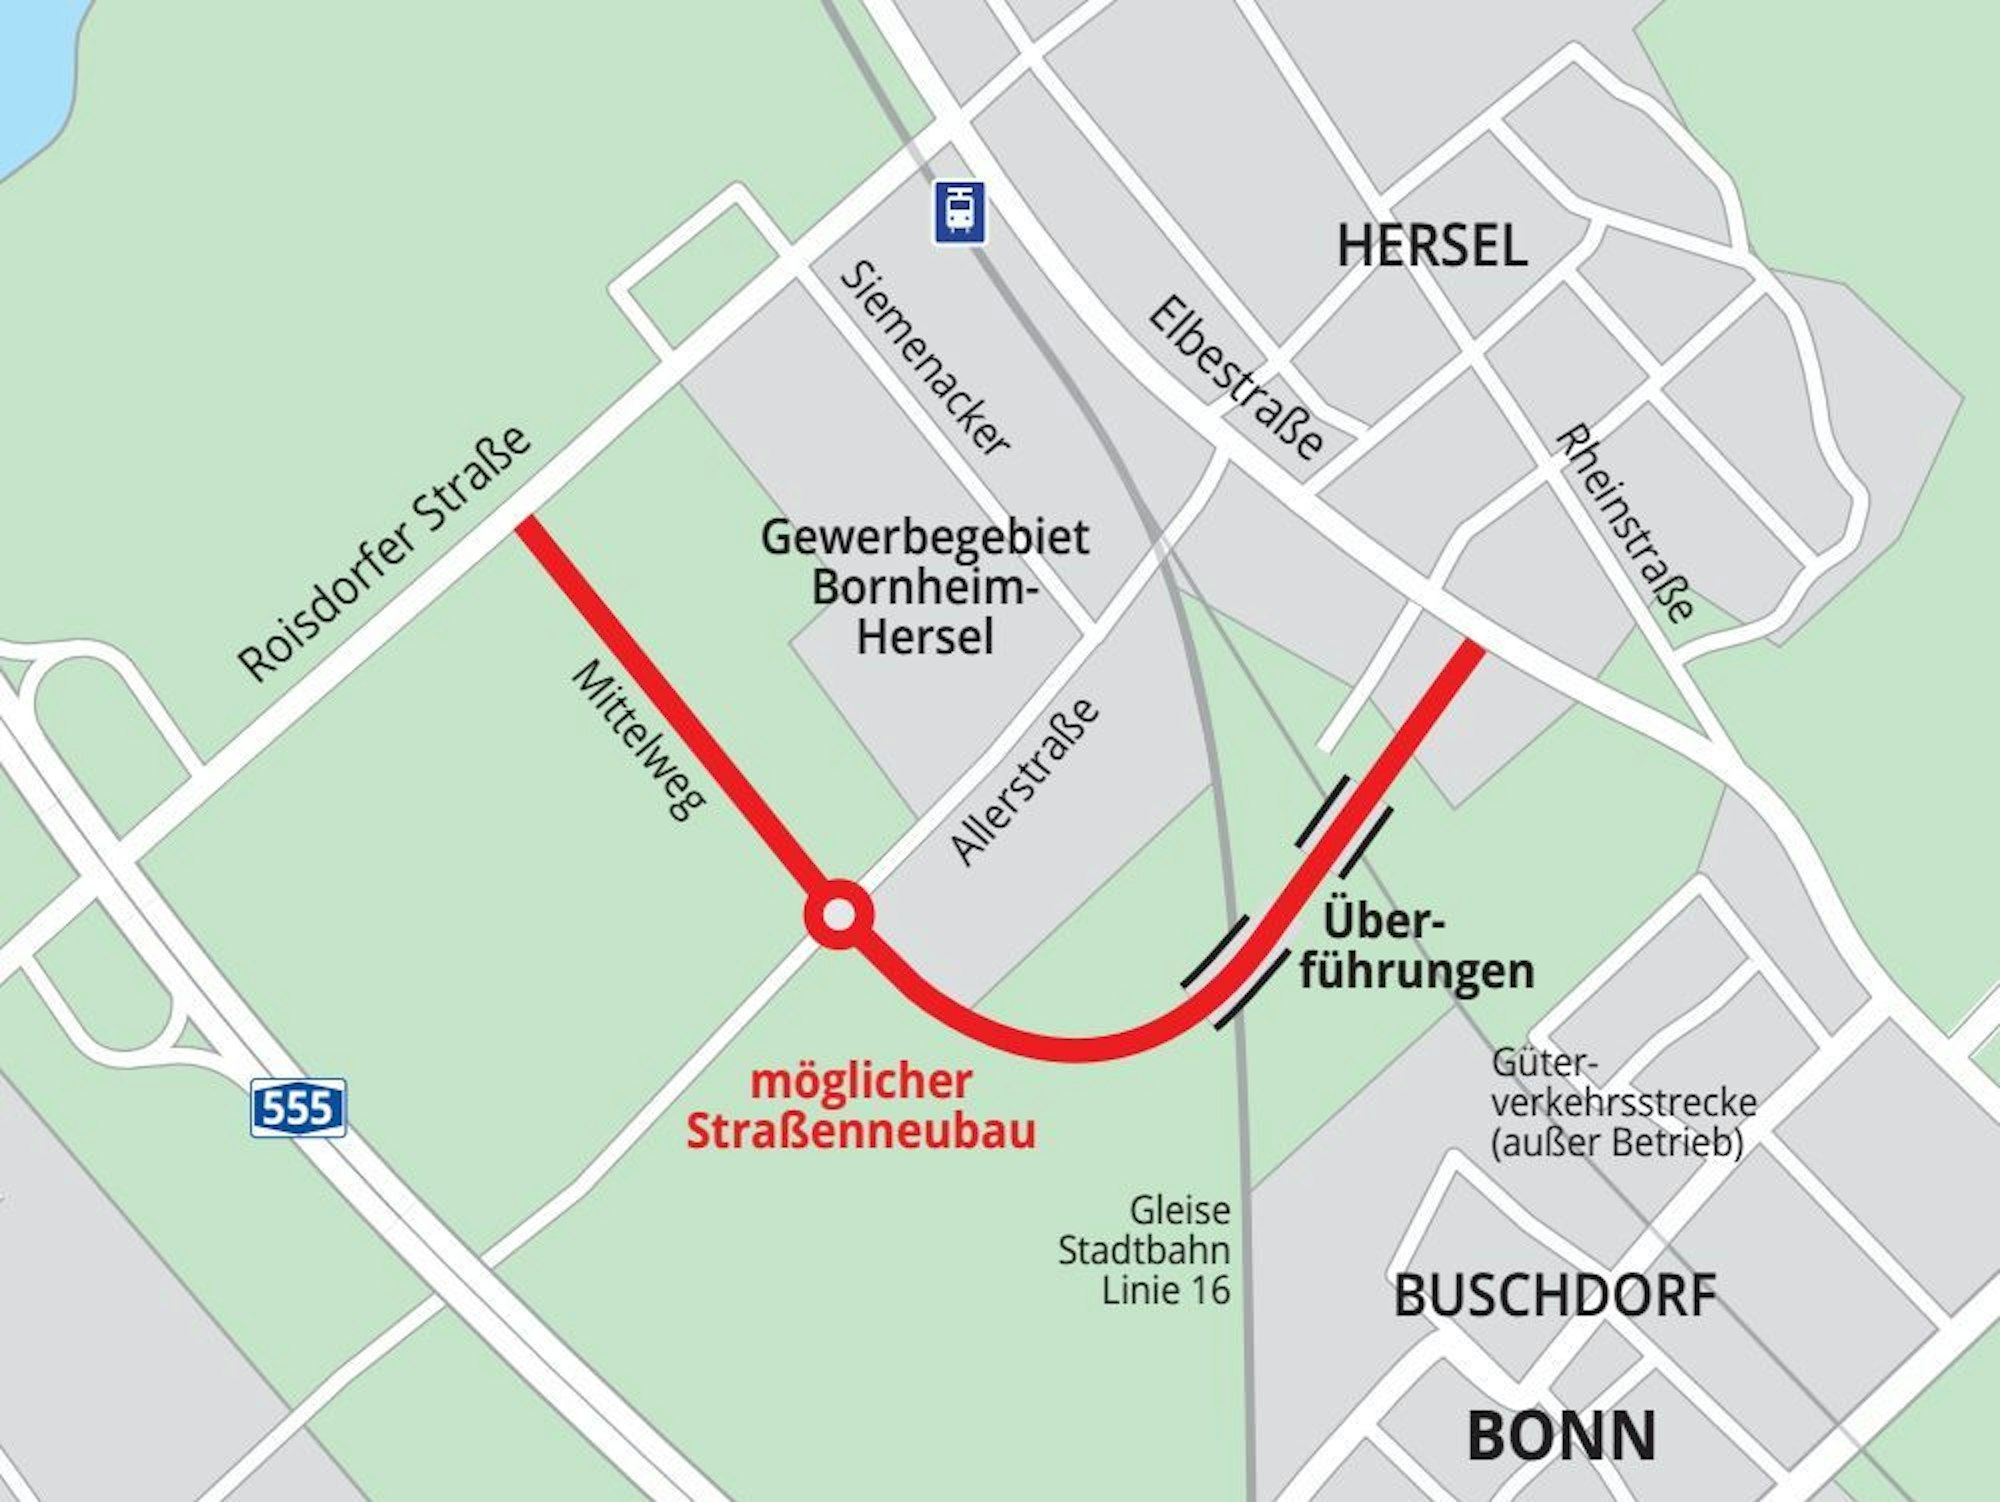 Rund 1,3 Kilometer lang ist die Variante 1a, davon sind rund 440 Meter deckungsgleich mit der Erschließung des Gewerbegebietes He 28.